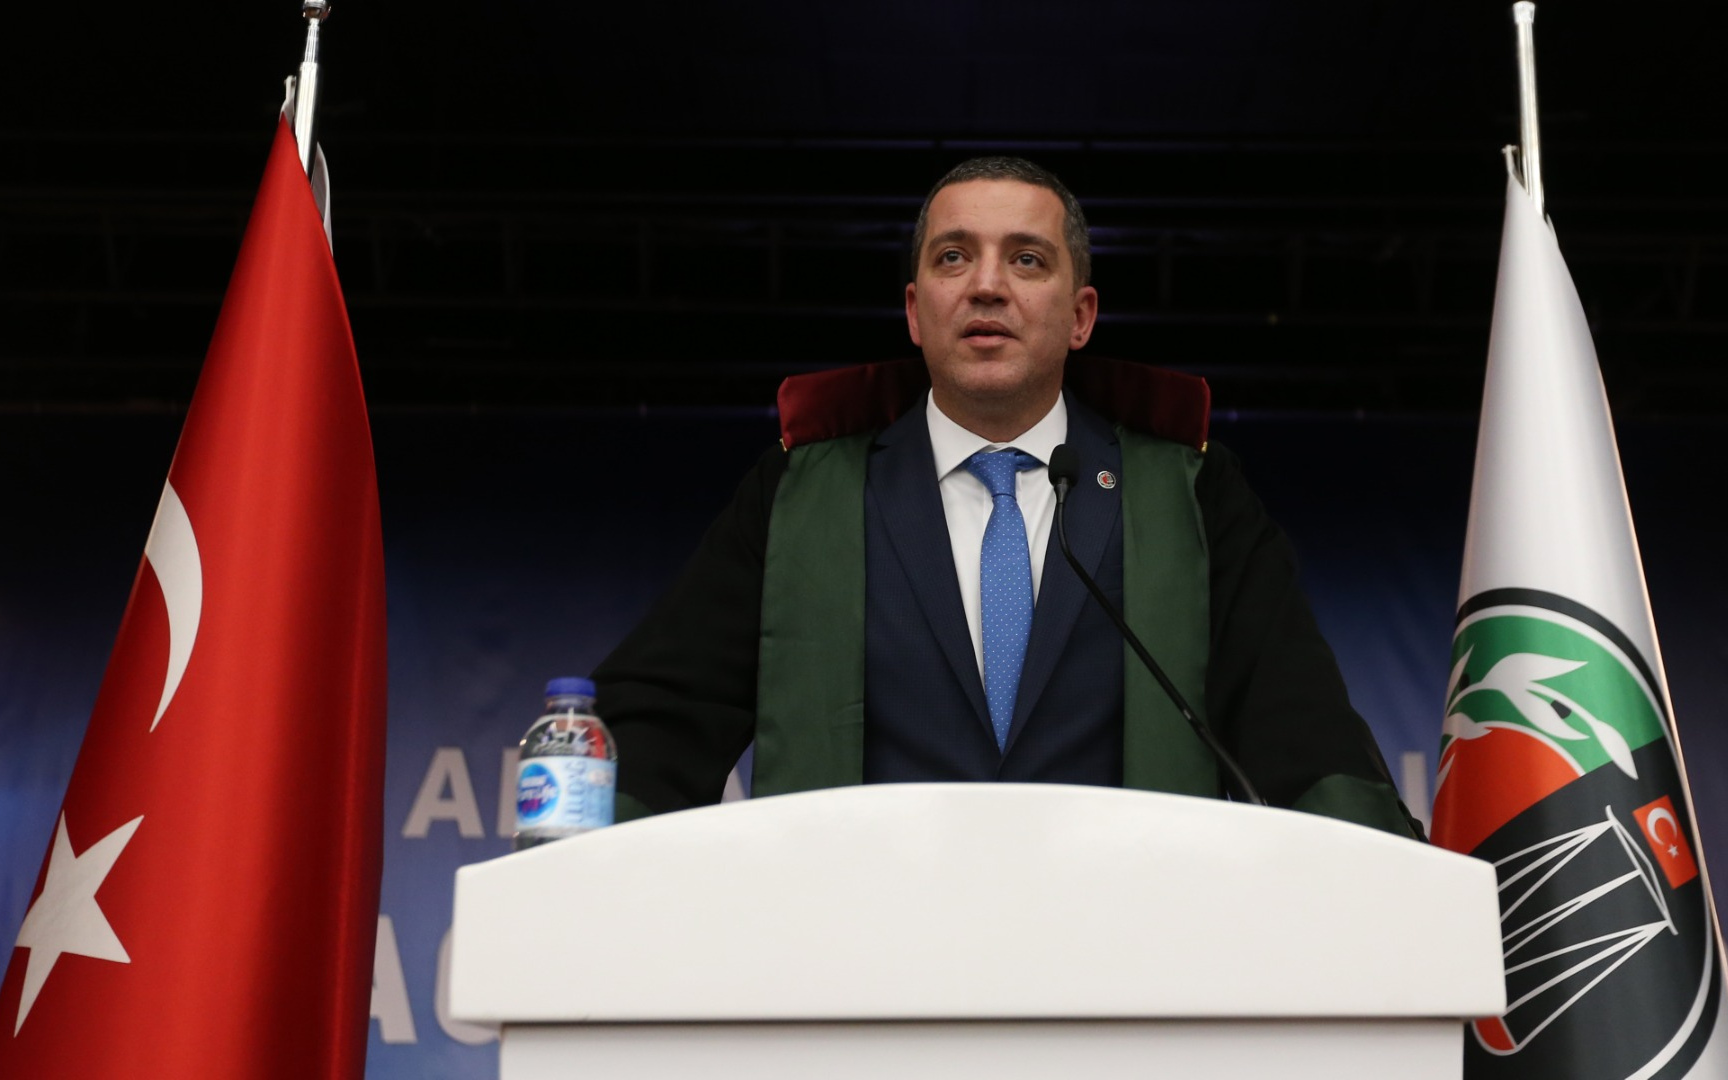 Adli yıl açılış töreninde 'Can Atalay' çağrısı: 'Olması gereken yer milletin Meclisidir'